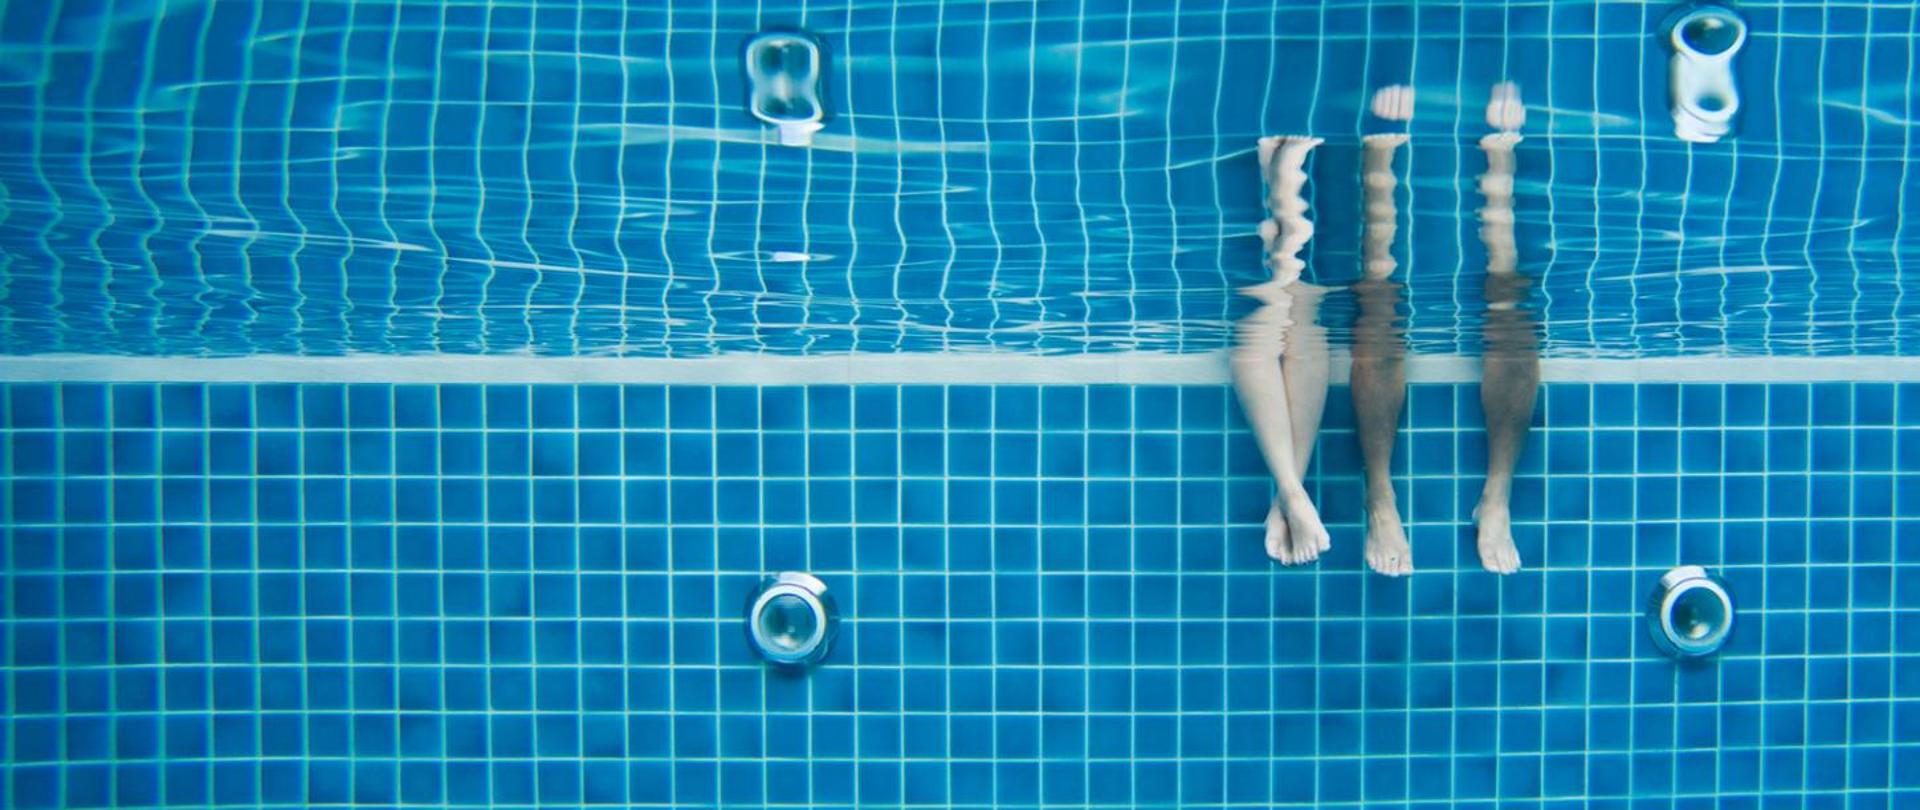 Podwodne zdjęcie basenu. W prawej części zdjęcia dwie pary nóg. Ze skrajnej strony męskie nogi, obok z lewej strony damskie.